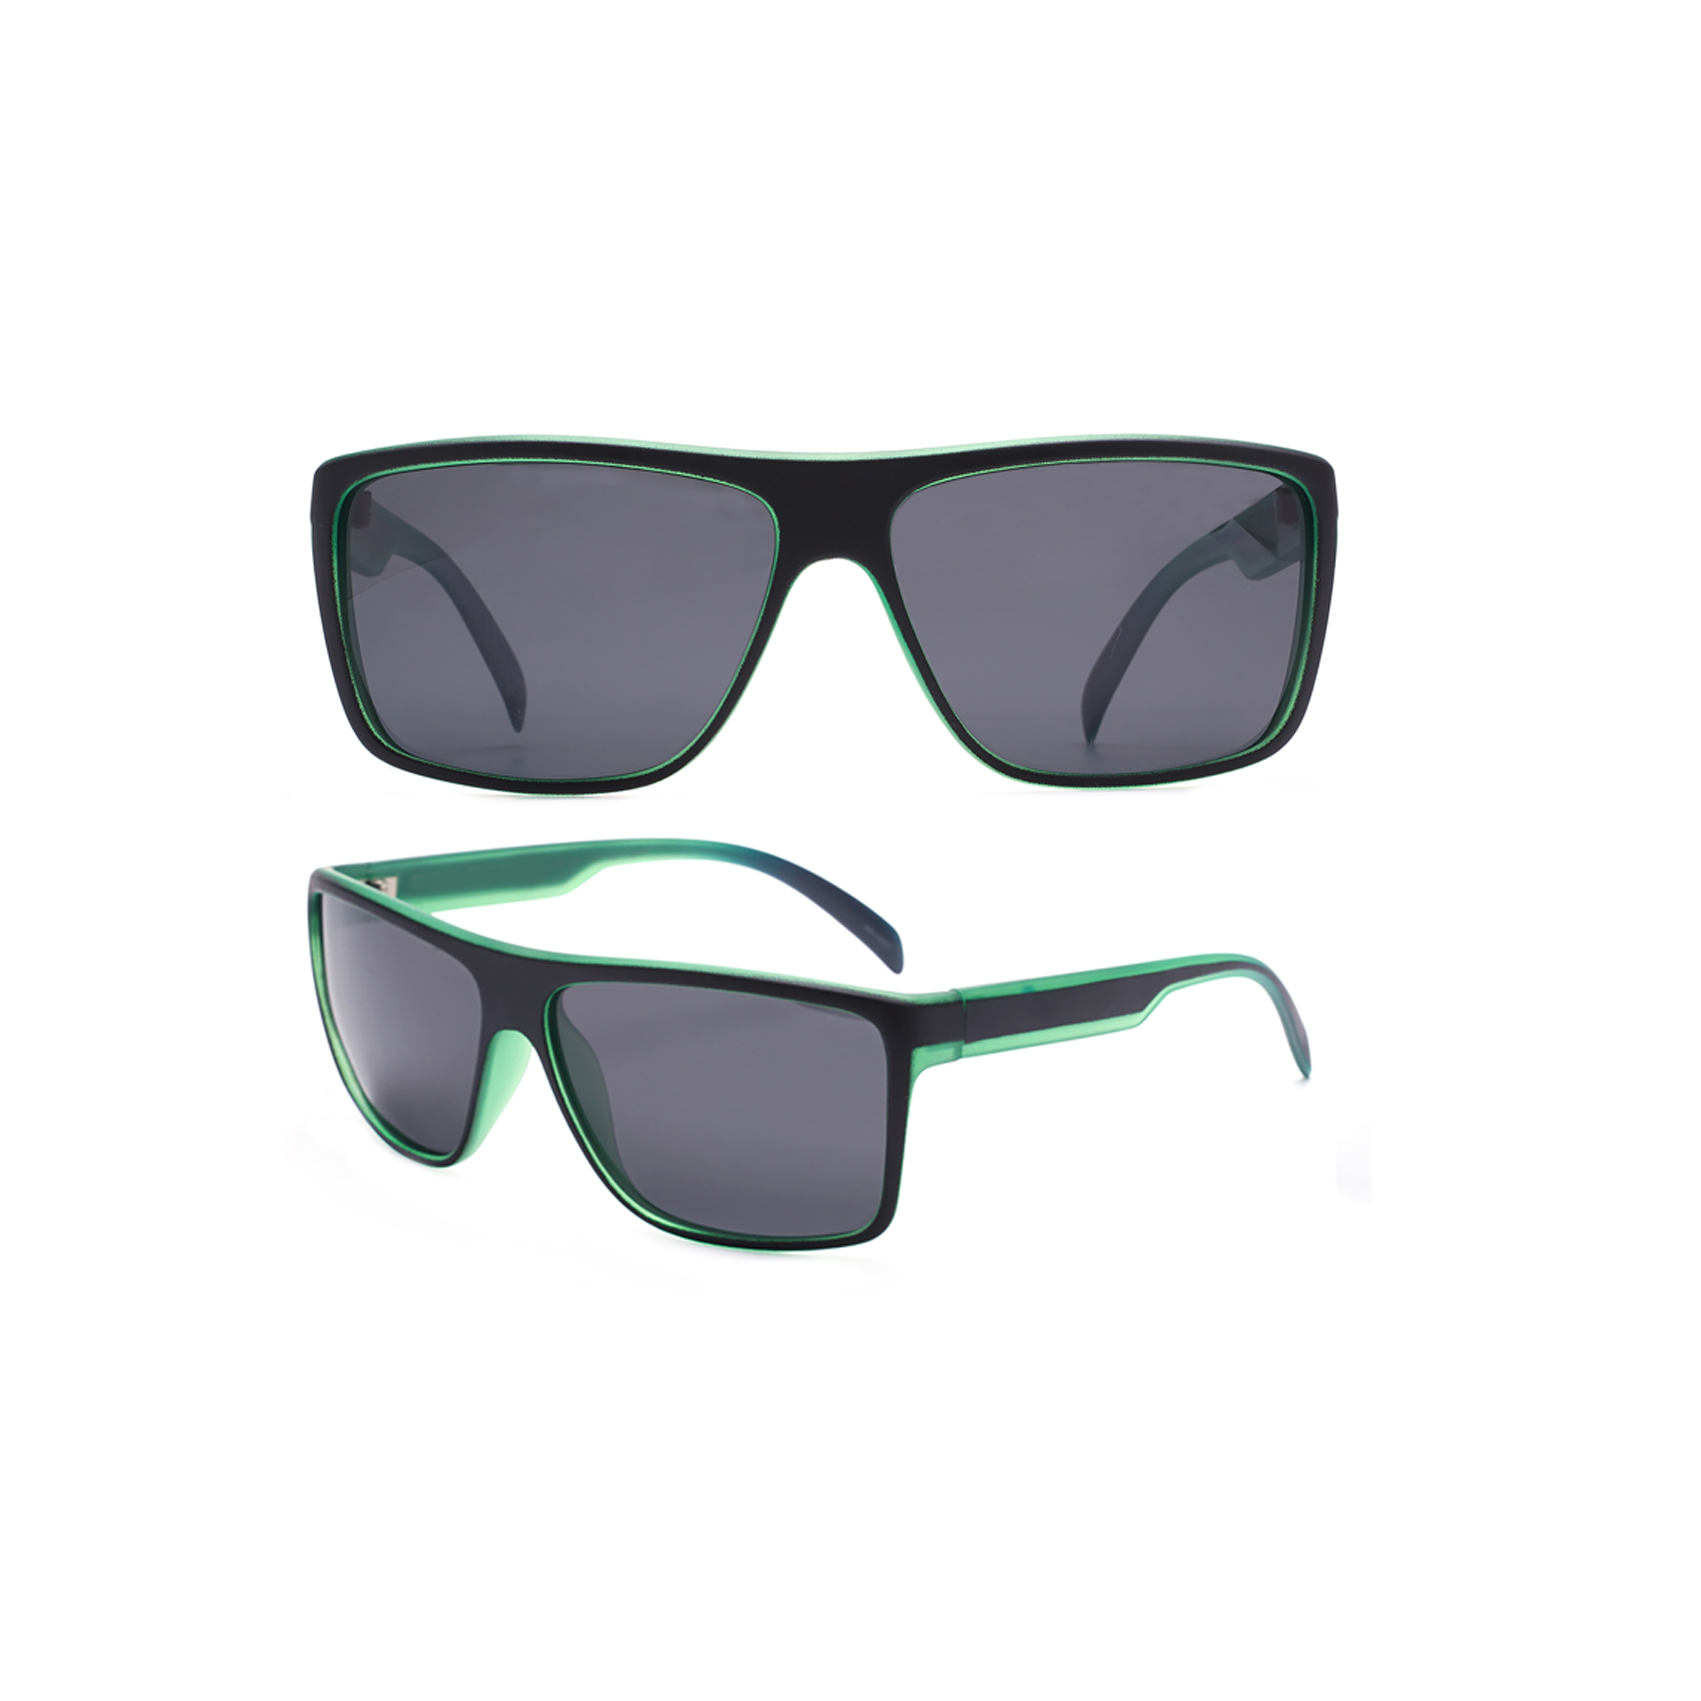 Standard Black Green Square Polarized Sunglasses Futuristic Sunglasses Designer